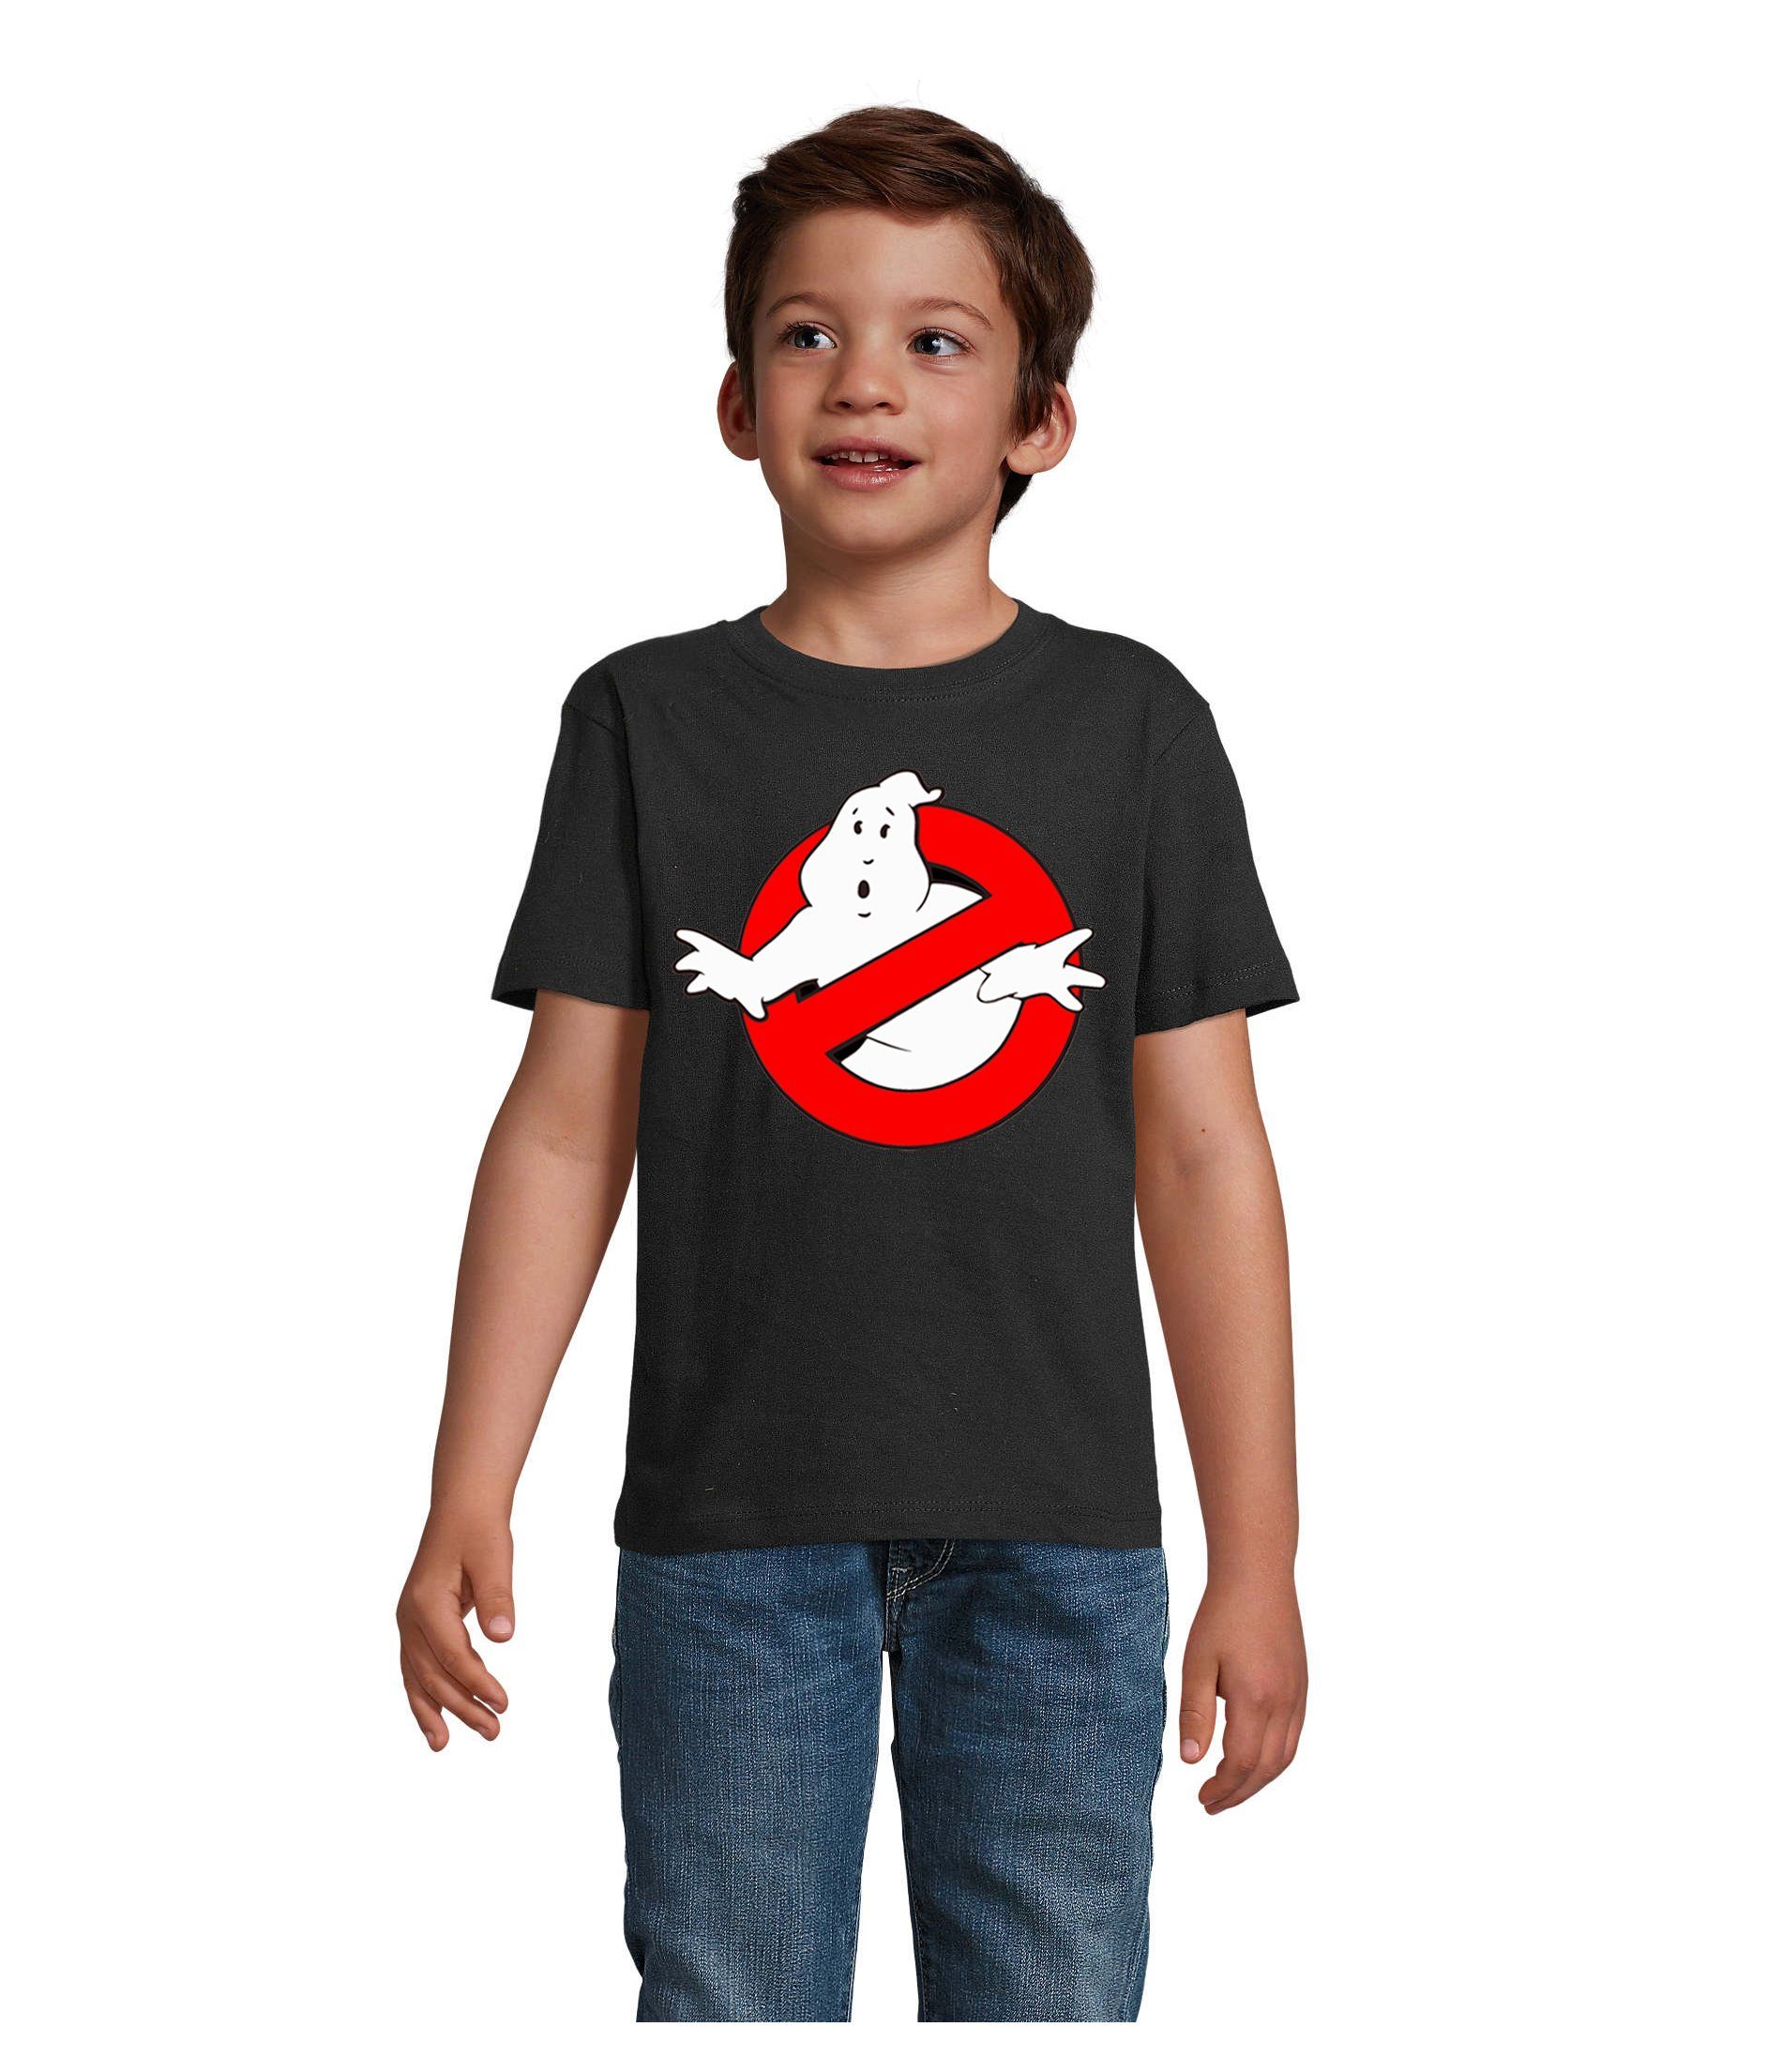 Kinder T-Shirt & Schwarz in Farben Geisterjäger Brownie vielen Jungen Ghostbusters Blondie Geister & Ghost Mädchen